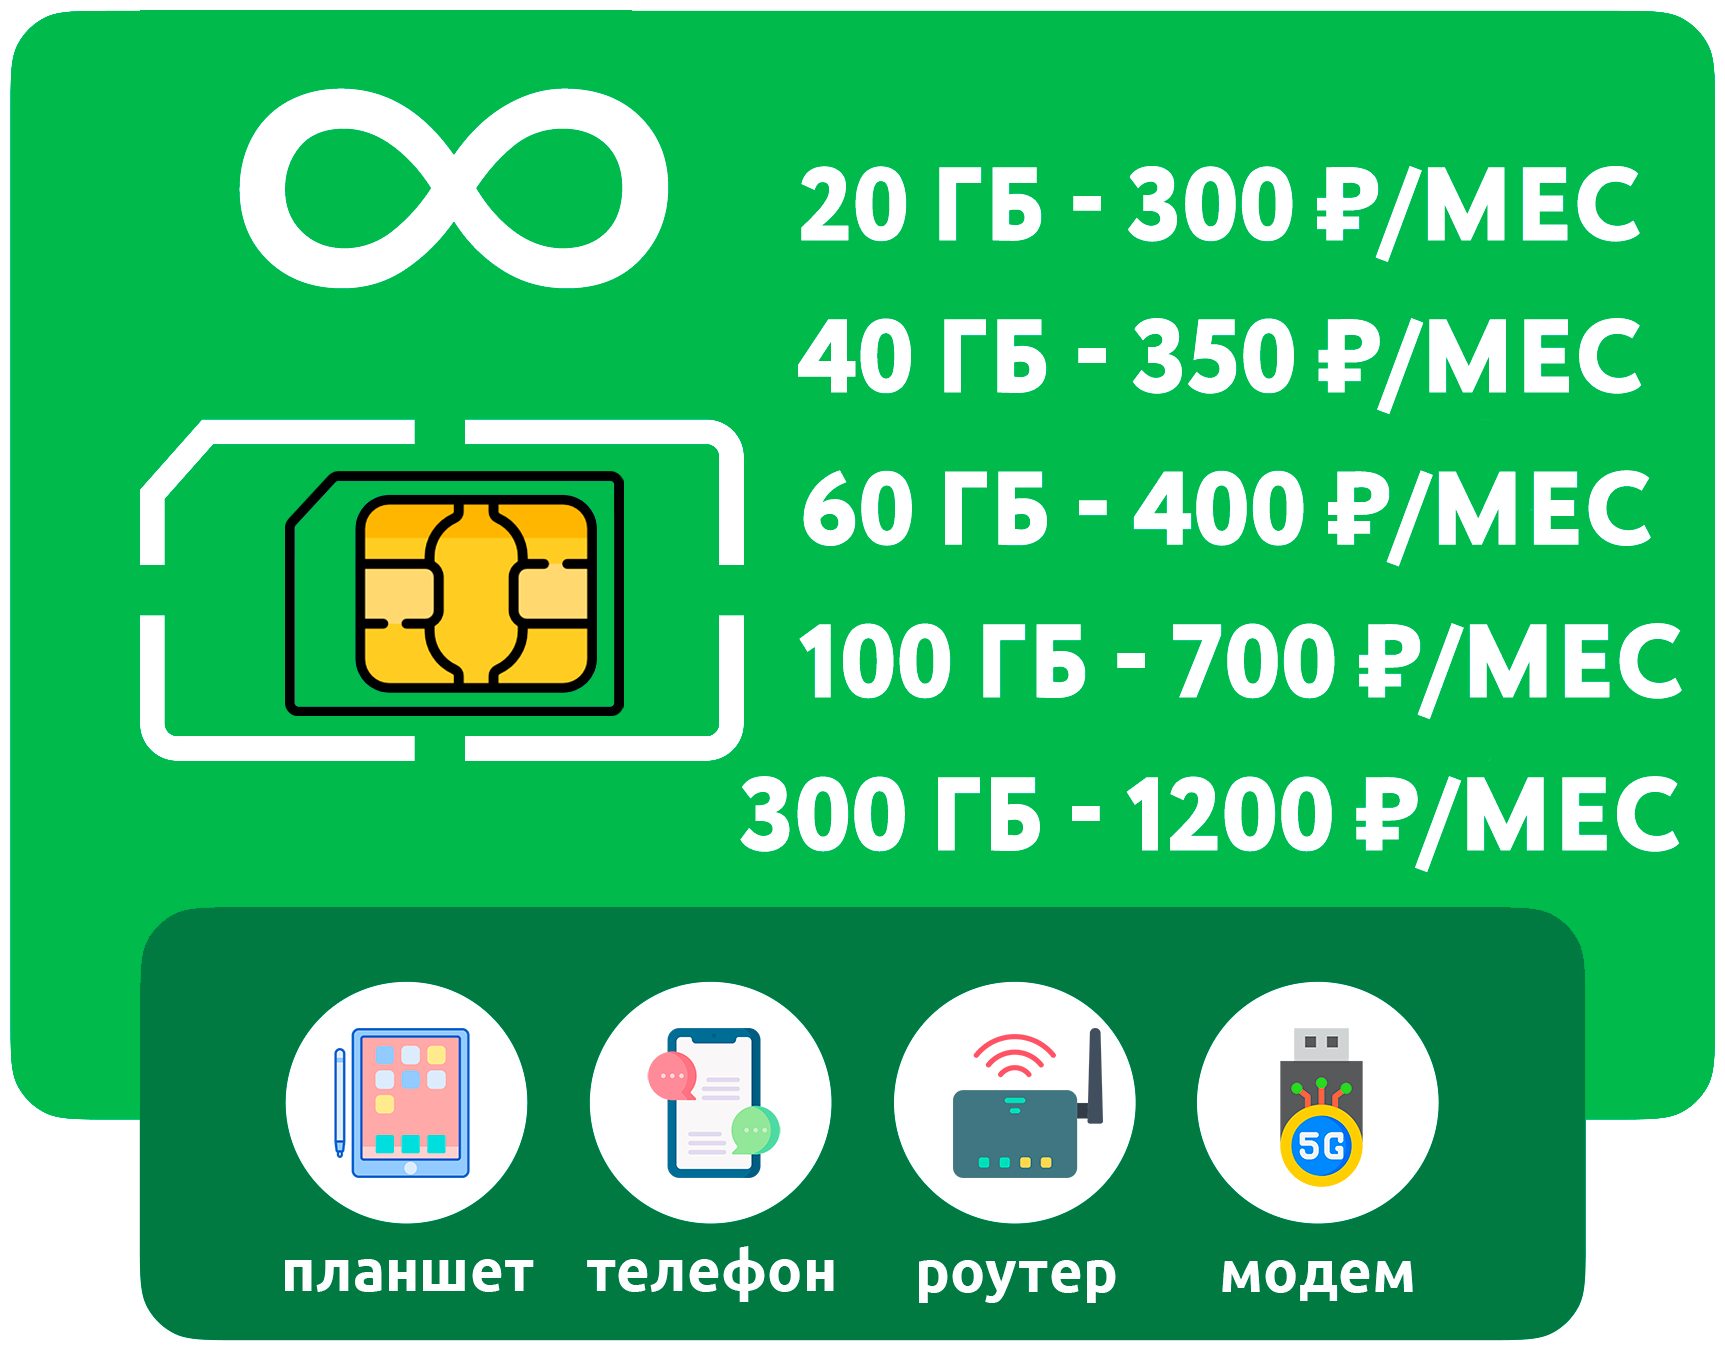 SIM-карта с интернетом 3G/4G от 300 руб/мес (модемы роутеры планшеты) + раздача торренты (Россия)